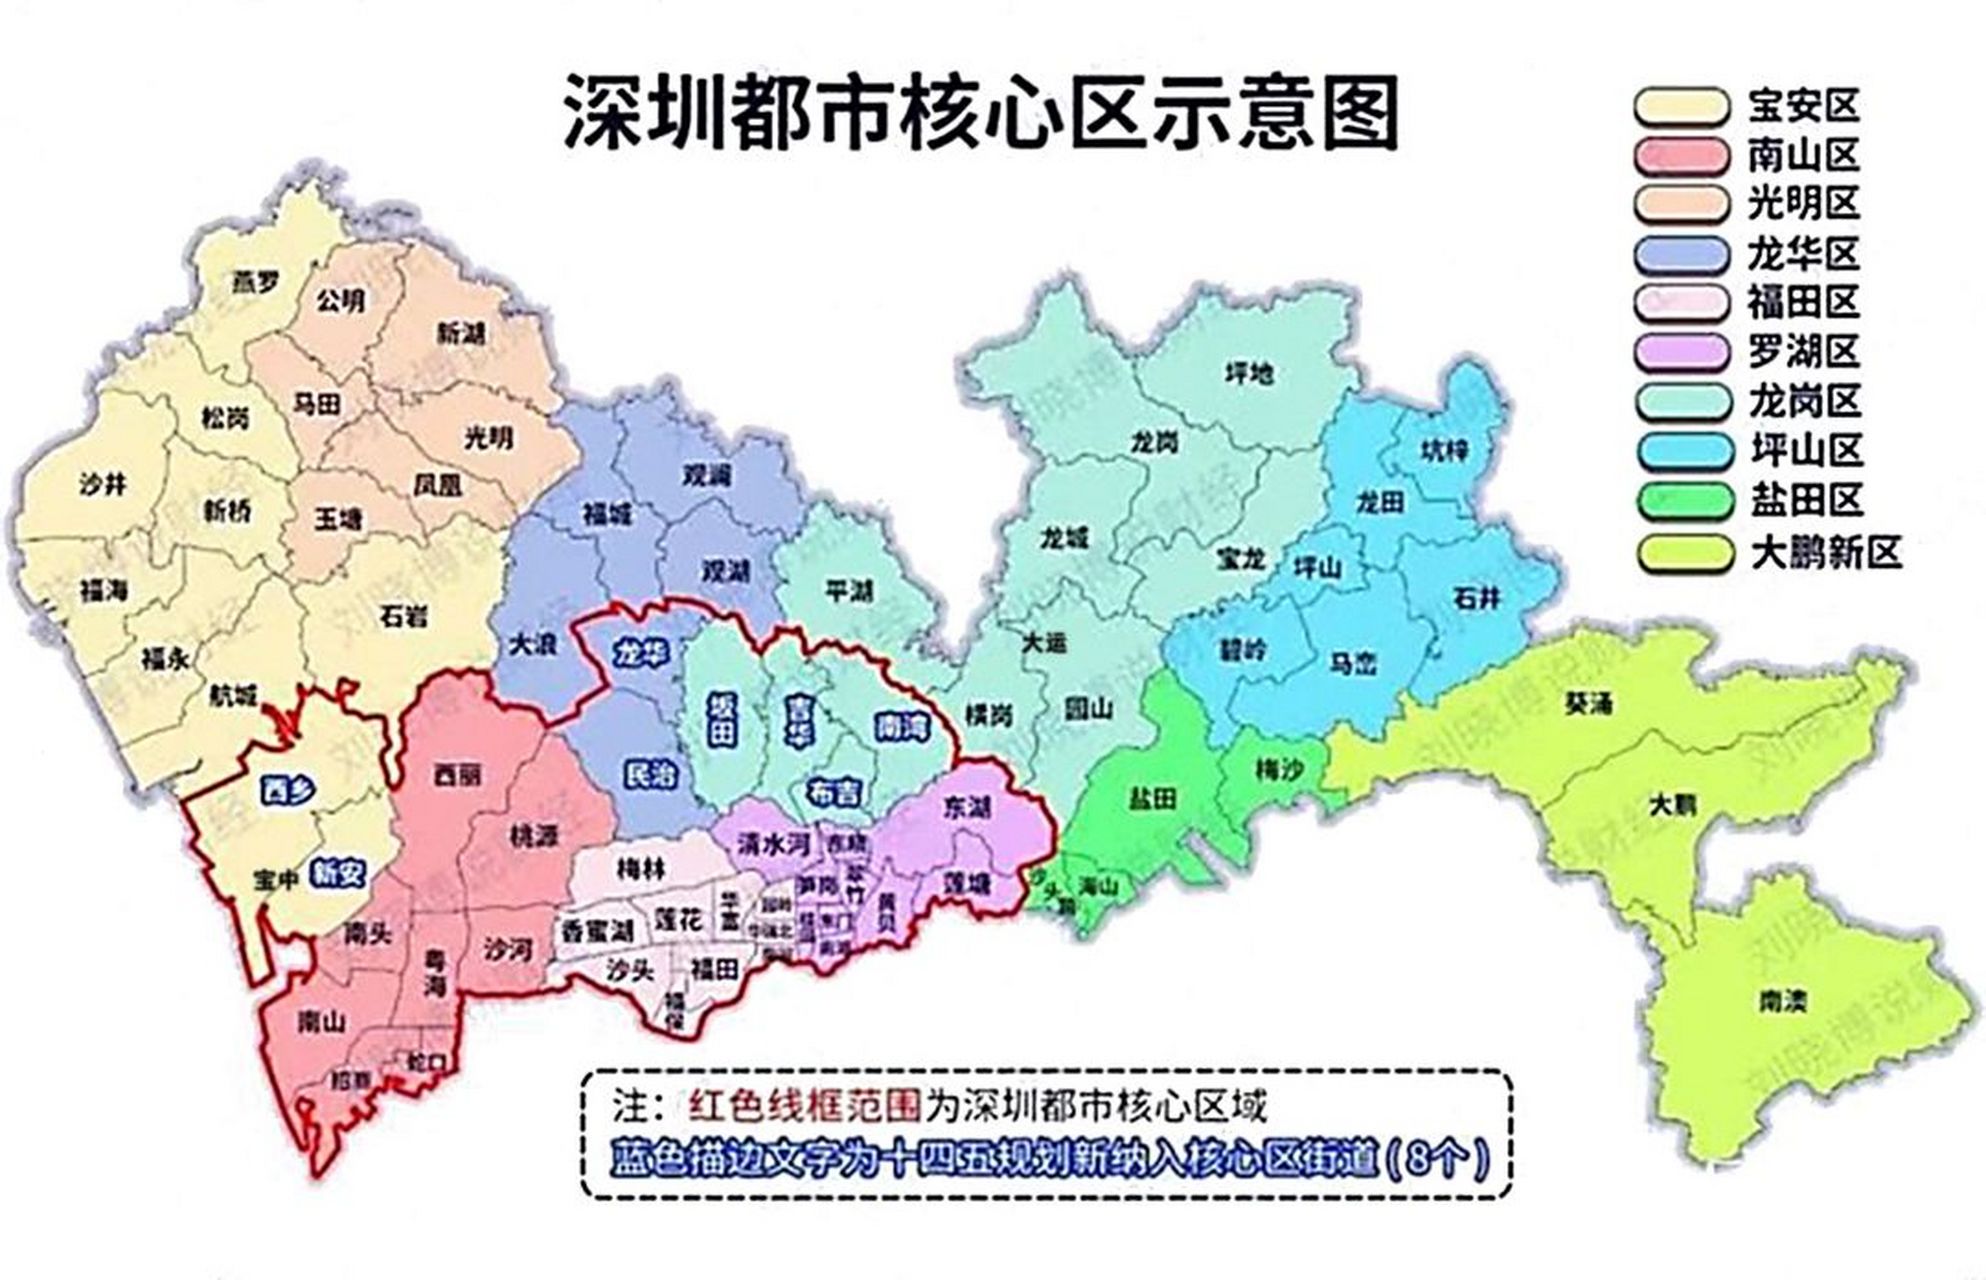 深圳分区划分图图片